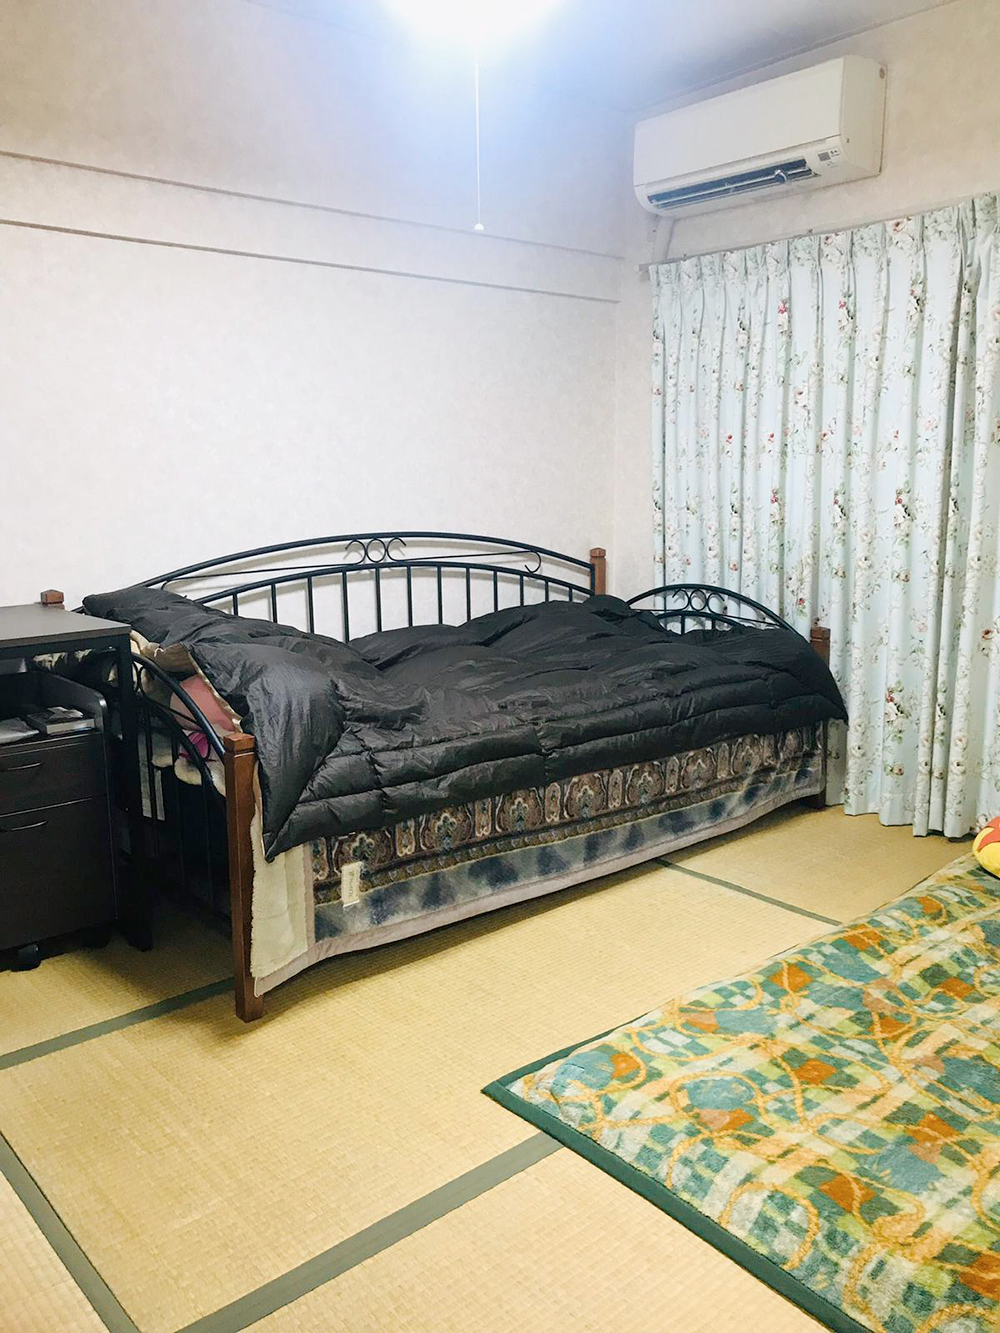 В каждом японском доме хотя бы одна комната устлана плетенными из тростника ковриками — татами. В ней не должно быть мебели, а спать нужно на футоне, который днем убирается в шкаф. Но я так и не отучилась от нормальной кровати